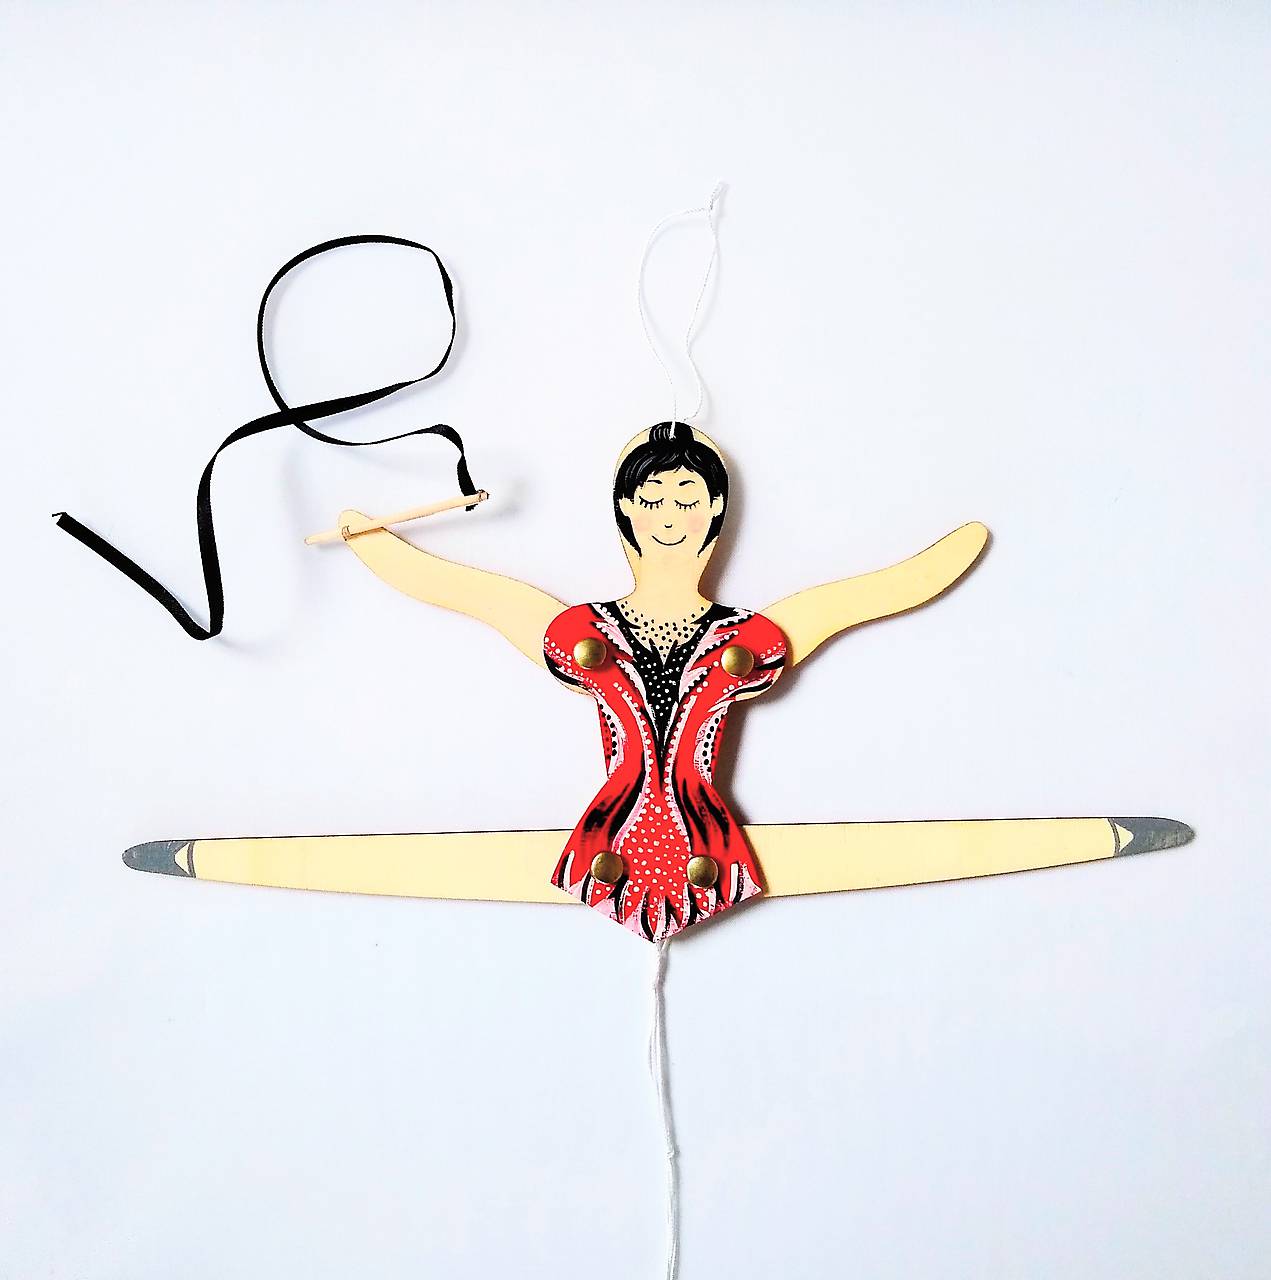 Pohyblivá hračka - Baletka (Gymnastka)